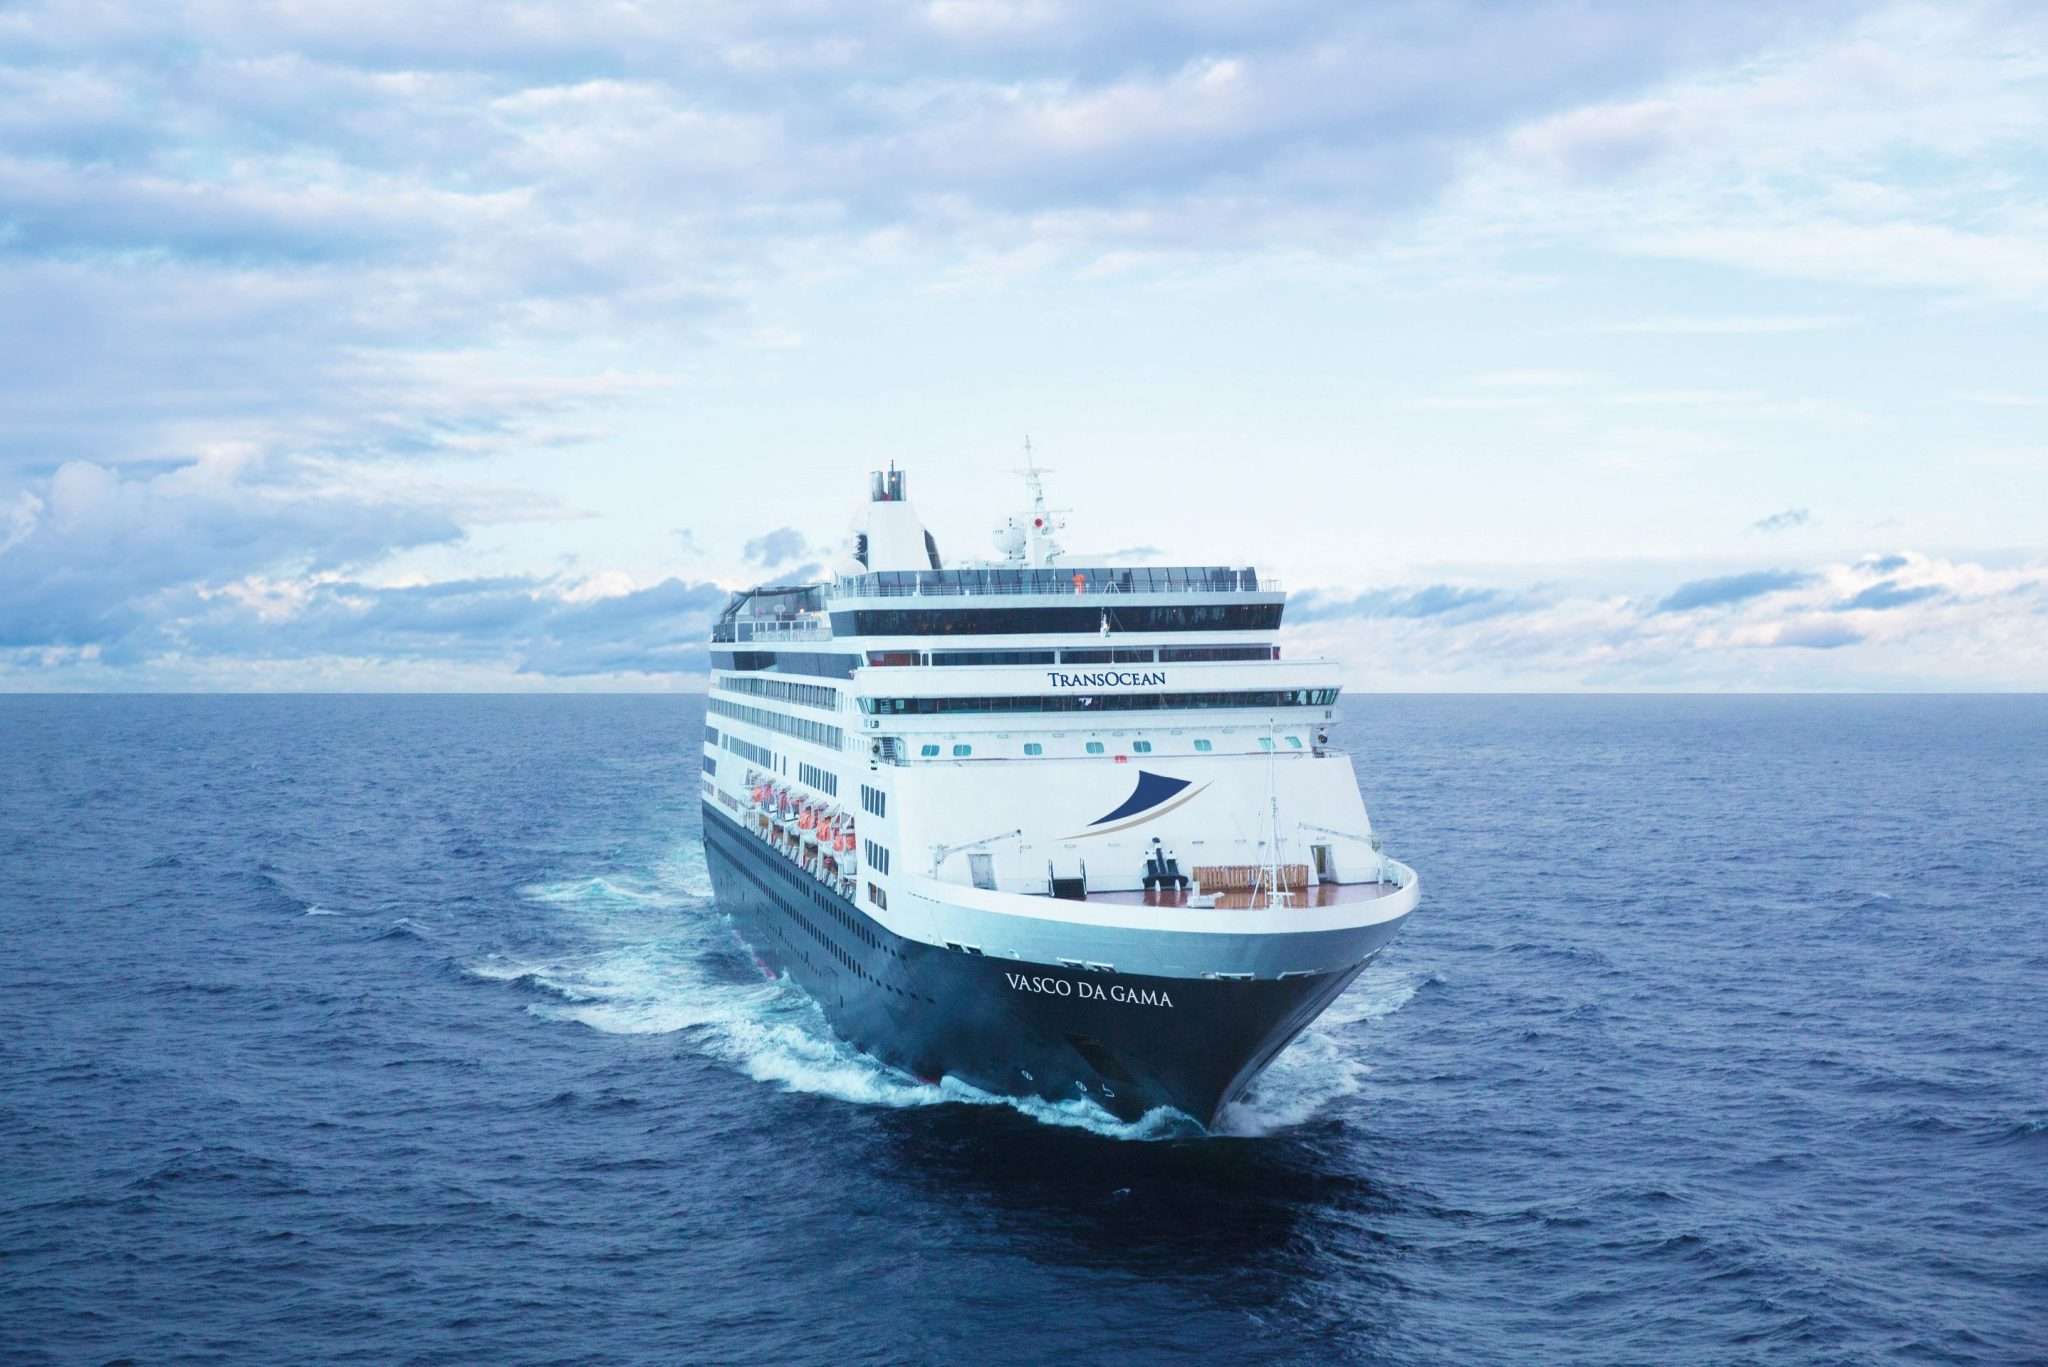 MS VASCO DA GAMA und MS ASTOR entdecken – TransOcean Kreuzfahrten lädt zu Schiffsbesichtigungen